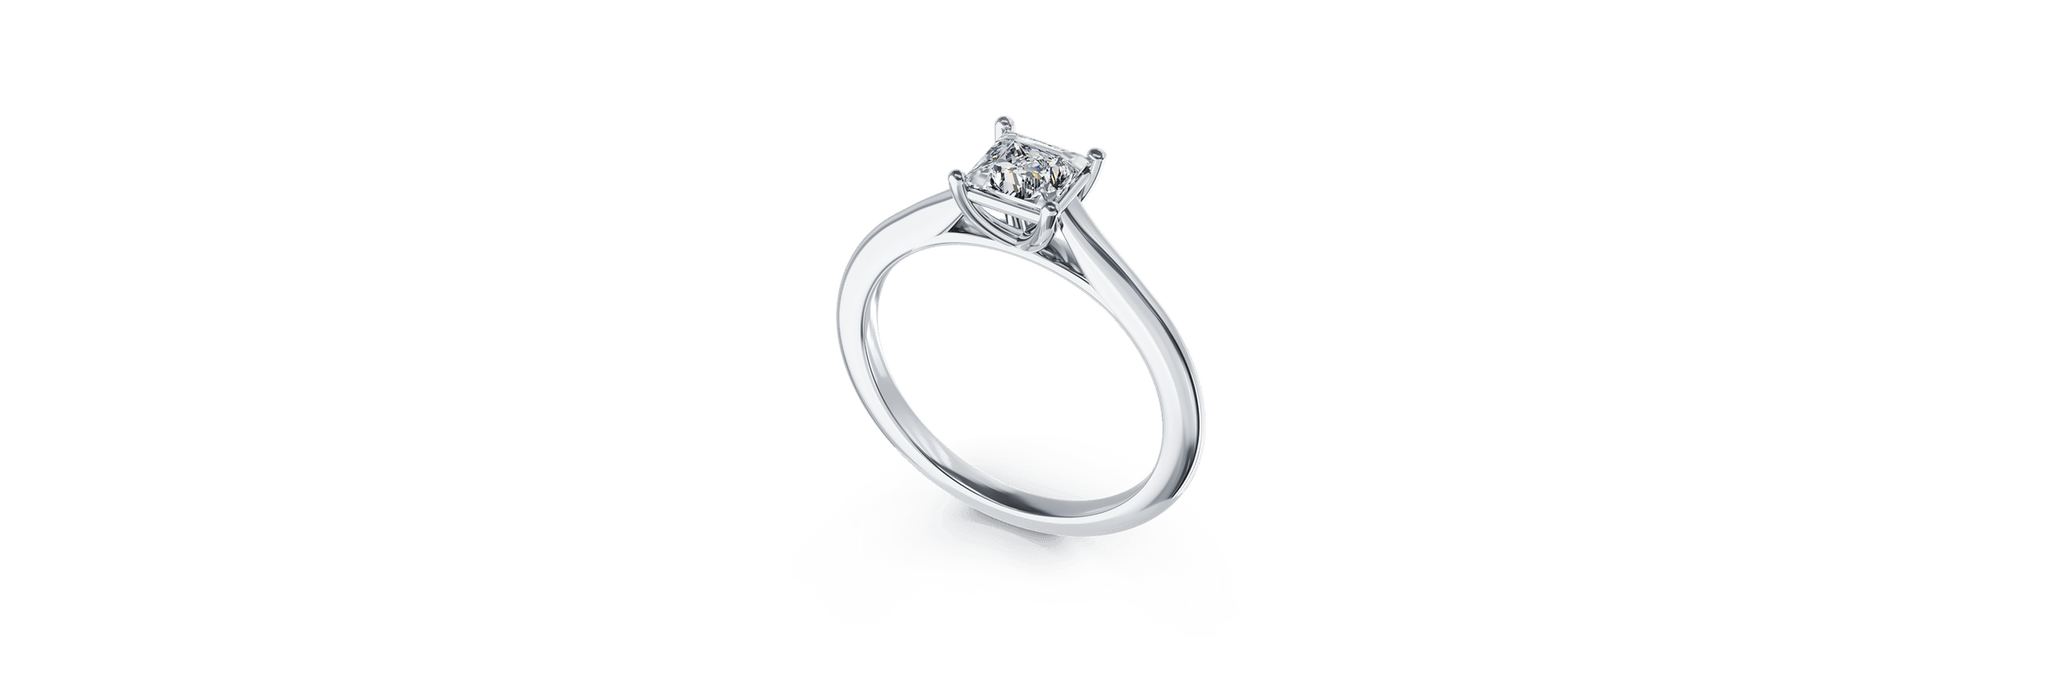 Inel de logodna din platina cu un diamant solitaire de 0.61ct